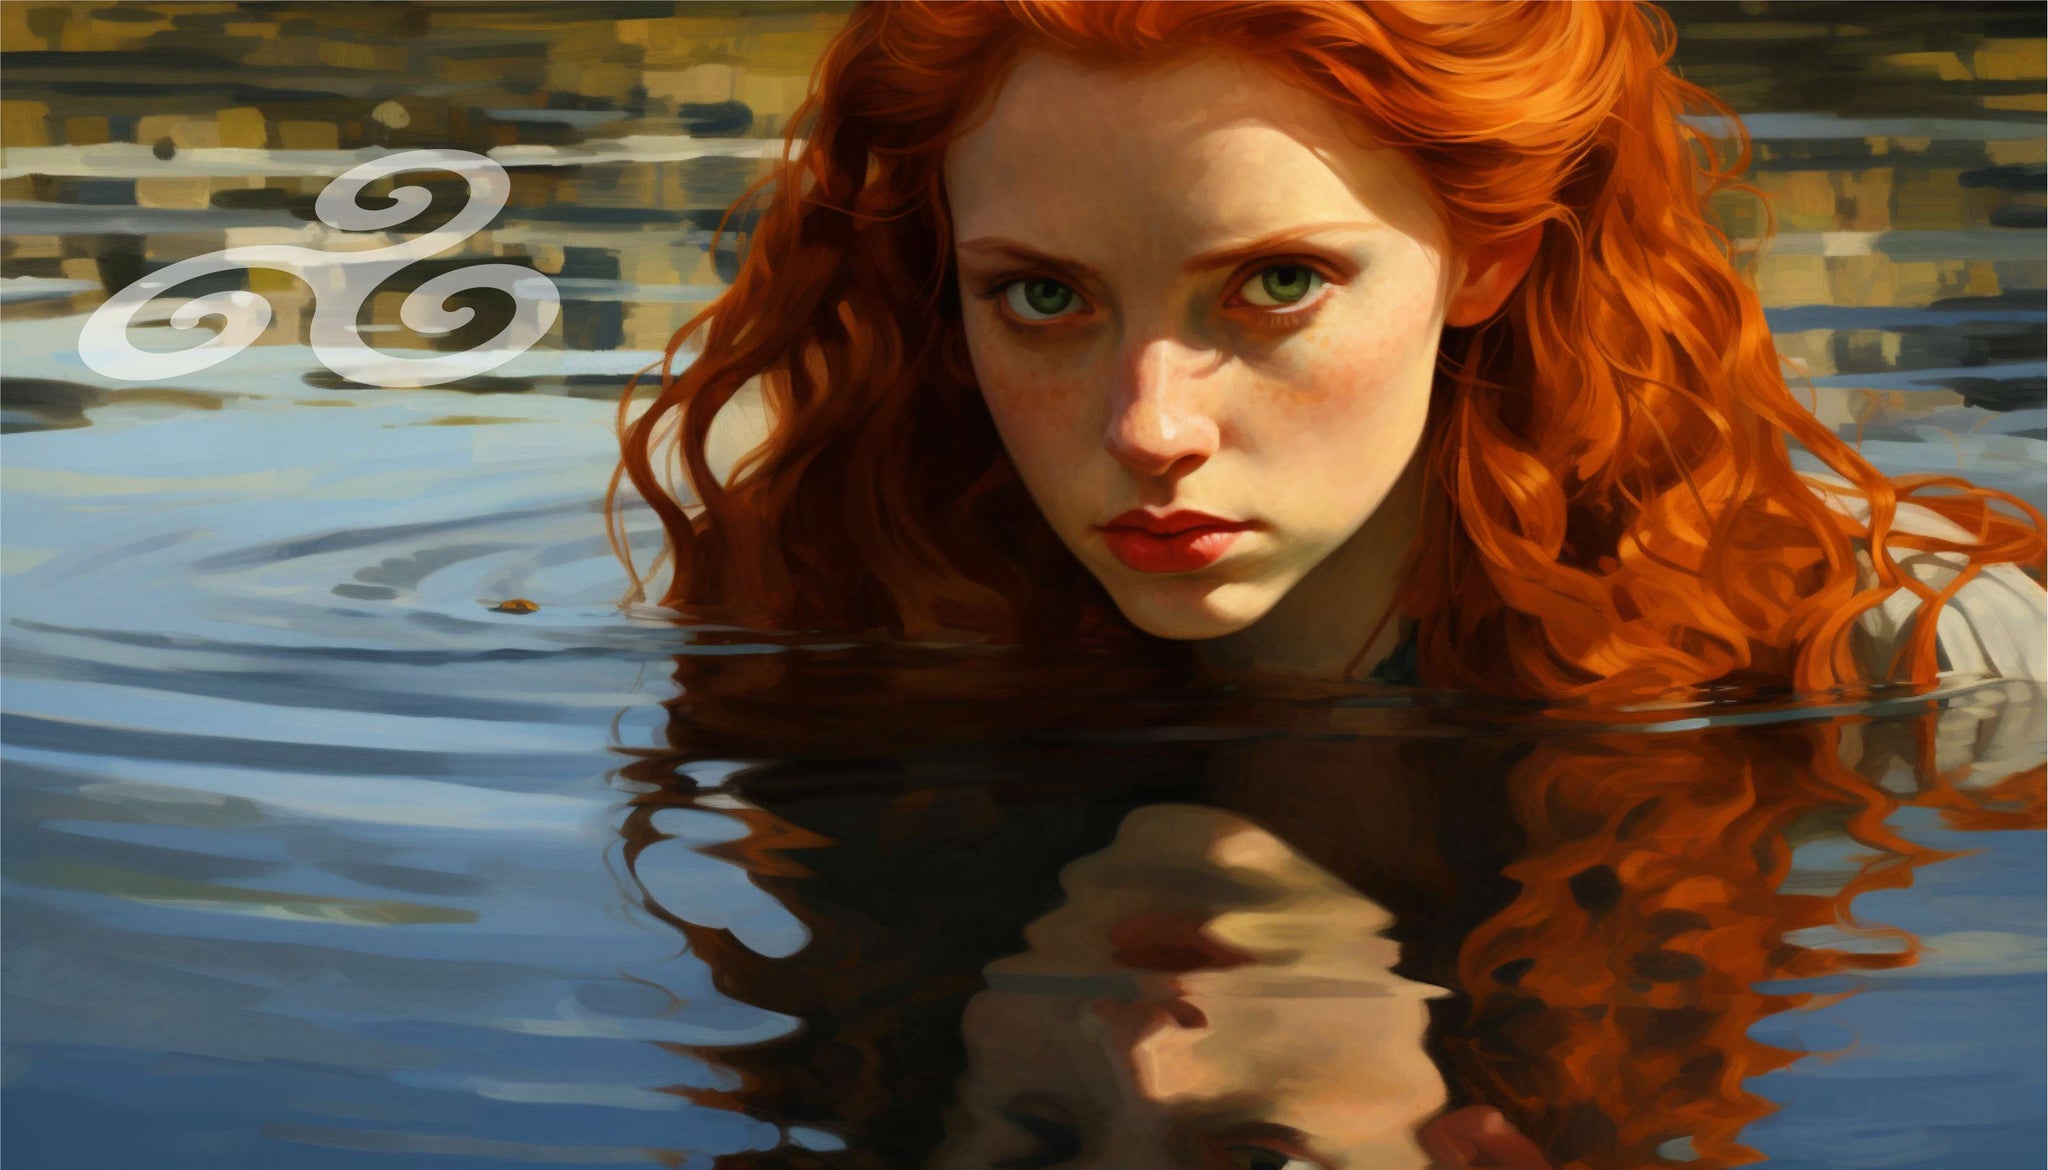 Belle fille rousse regardant son reflet avec trisquel flottant sur la rivière